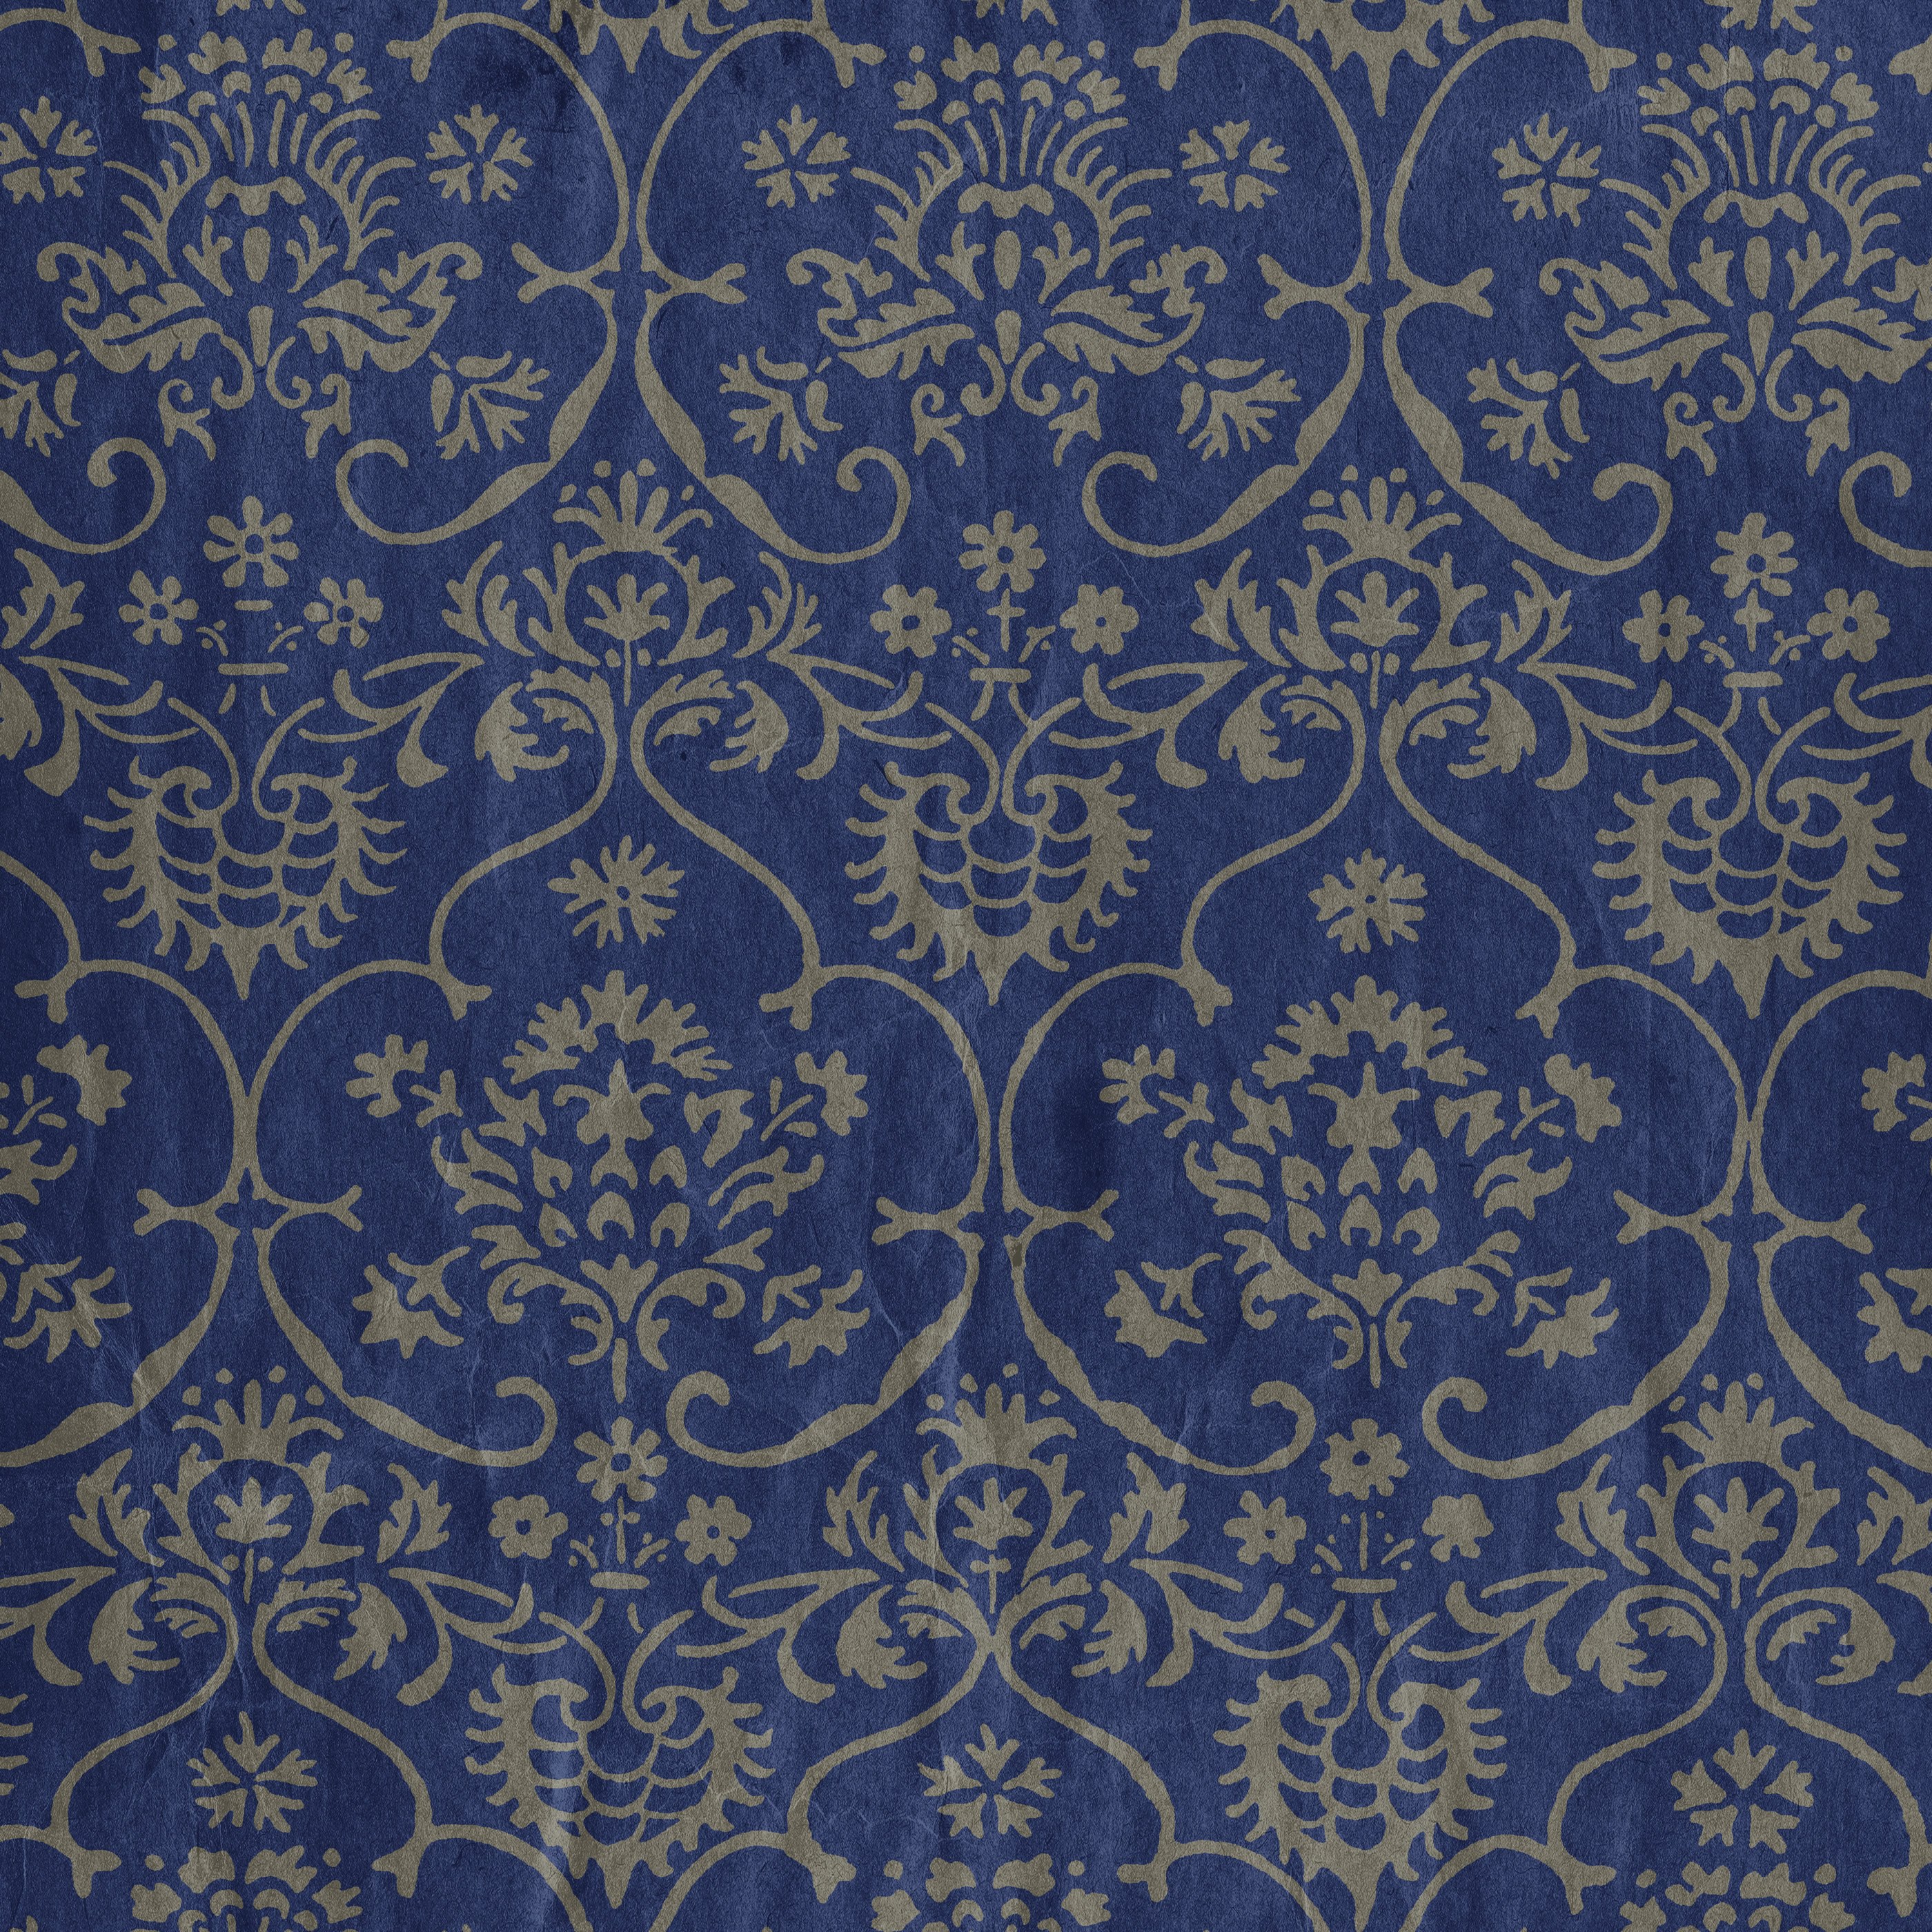 цветной орнамент, скачать фон, текстура, фото, синий узор, blue pattern background